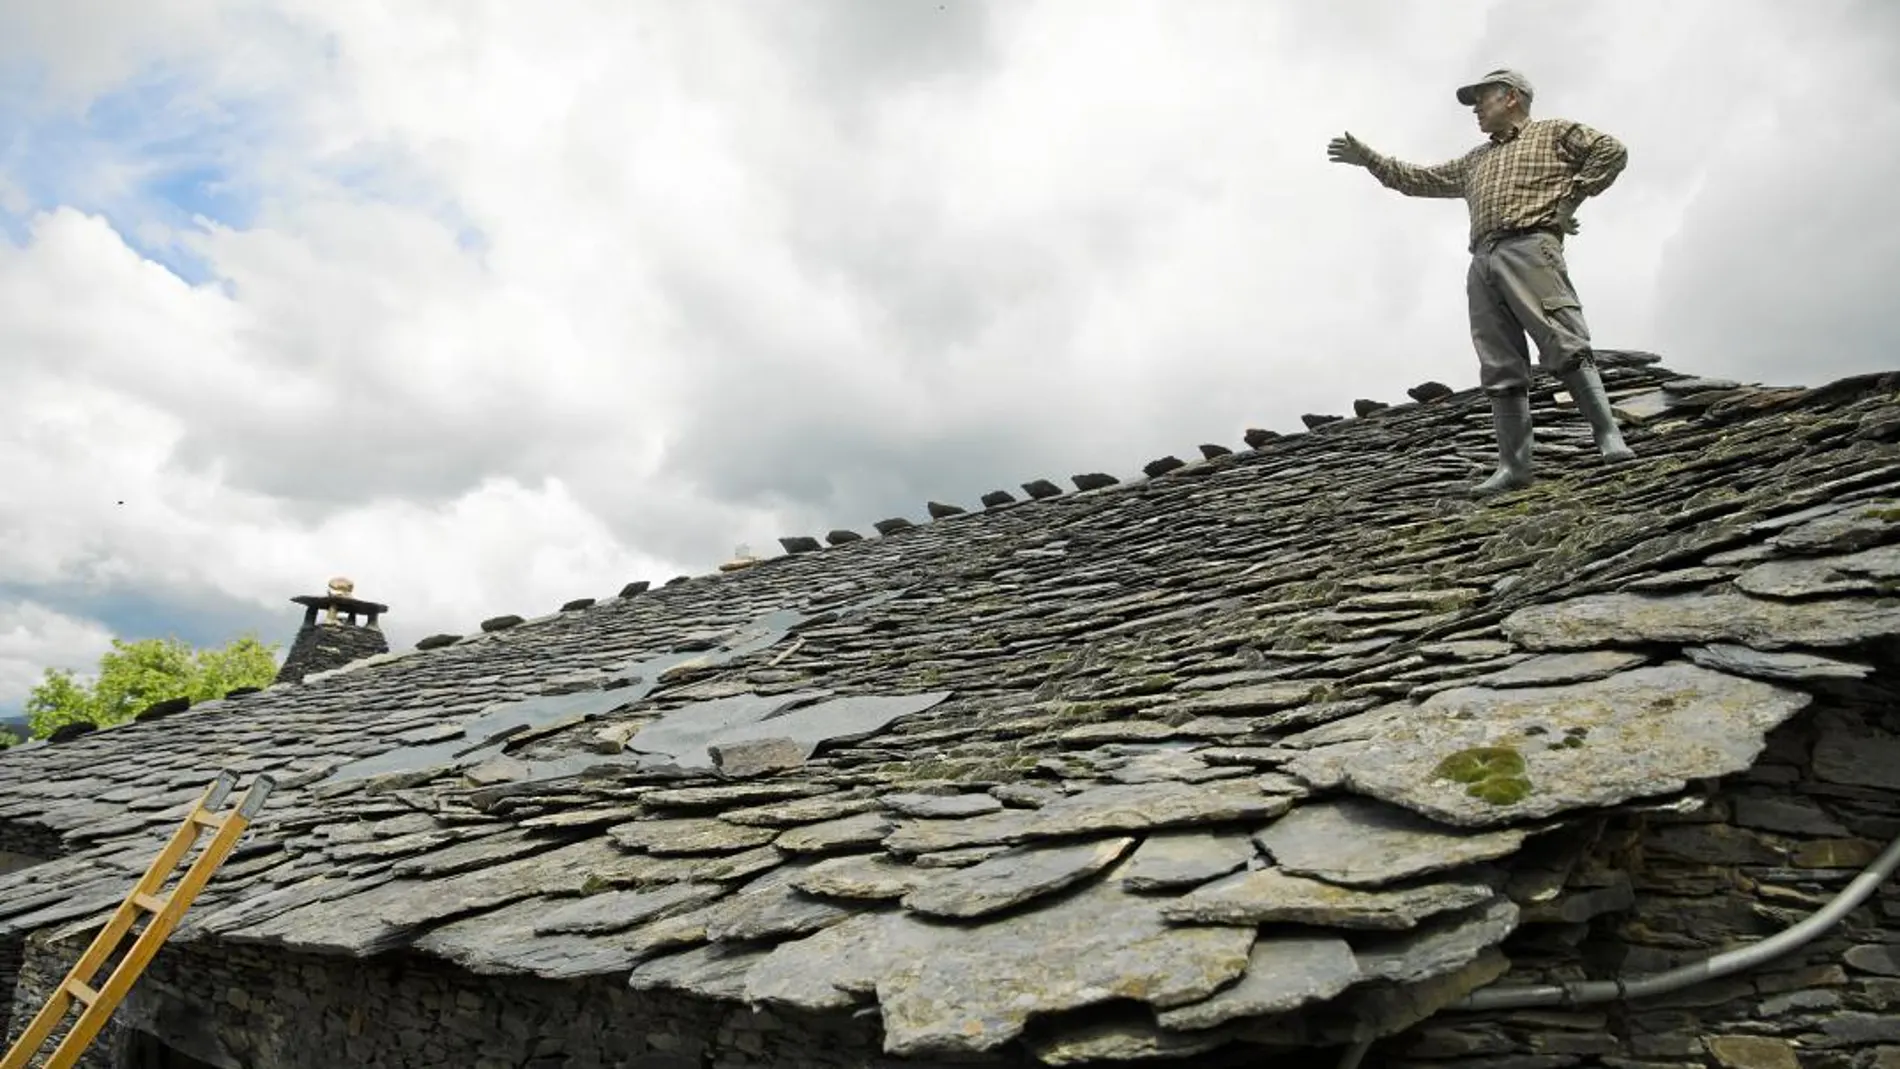 Daniel, natural de Majaelrayo, en Guadalajara, repara el tejado de su casa la cual forma parte de la arquitectura negra de la zona, realizada a base de pizarra